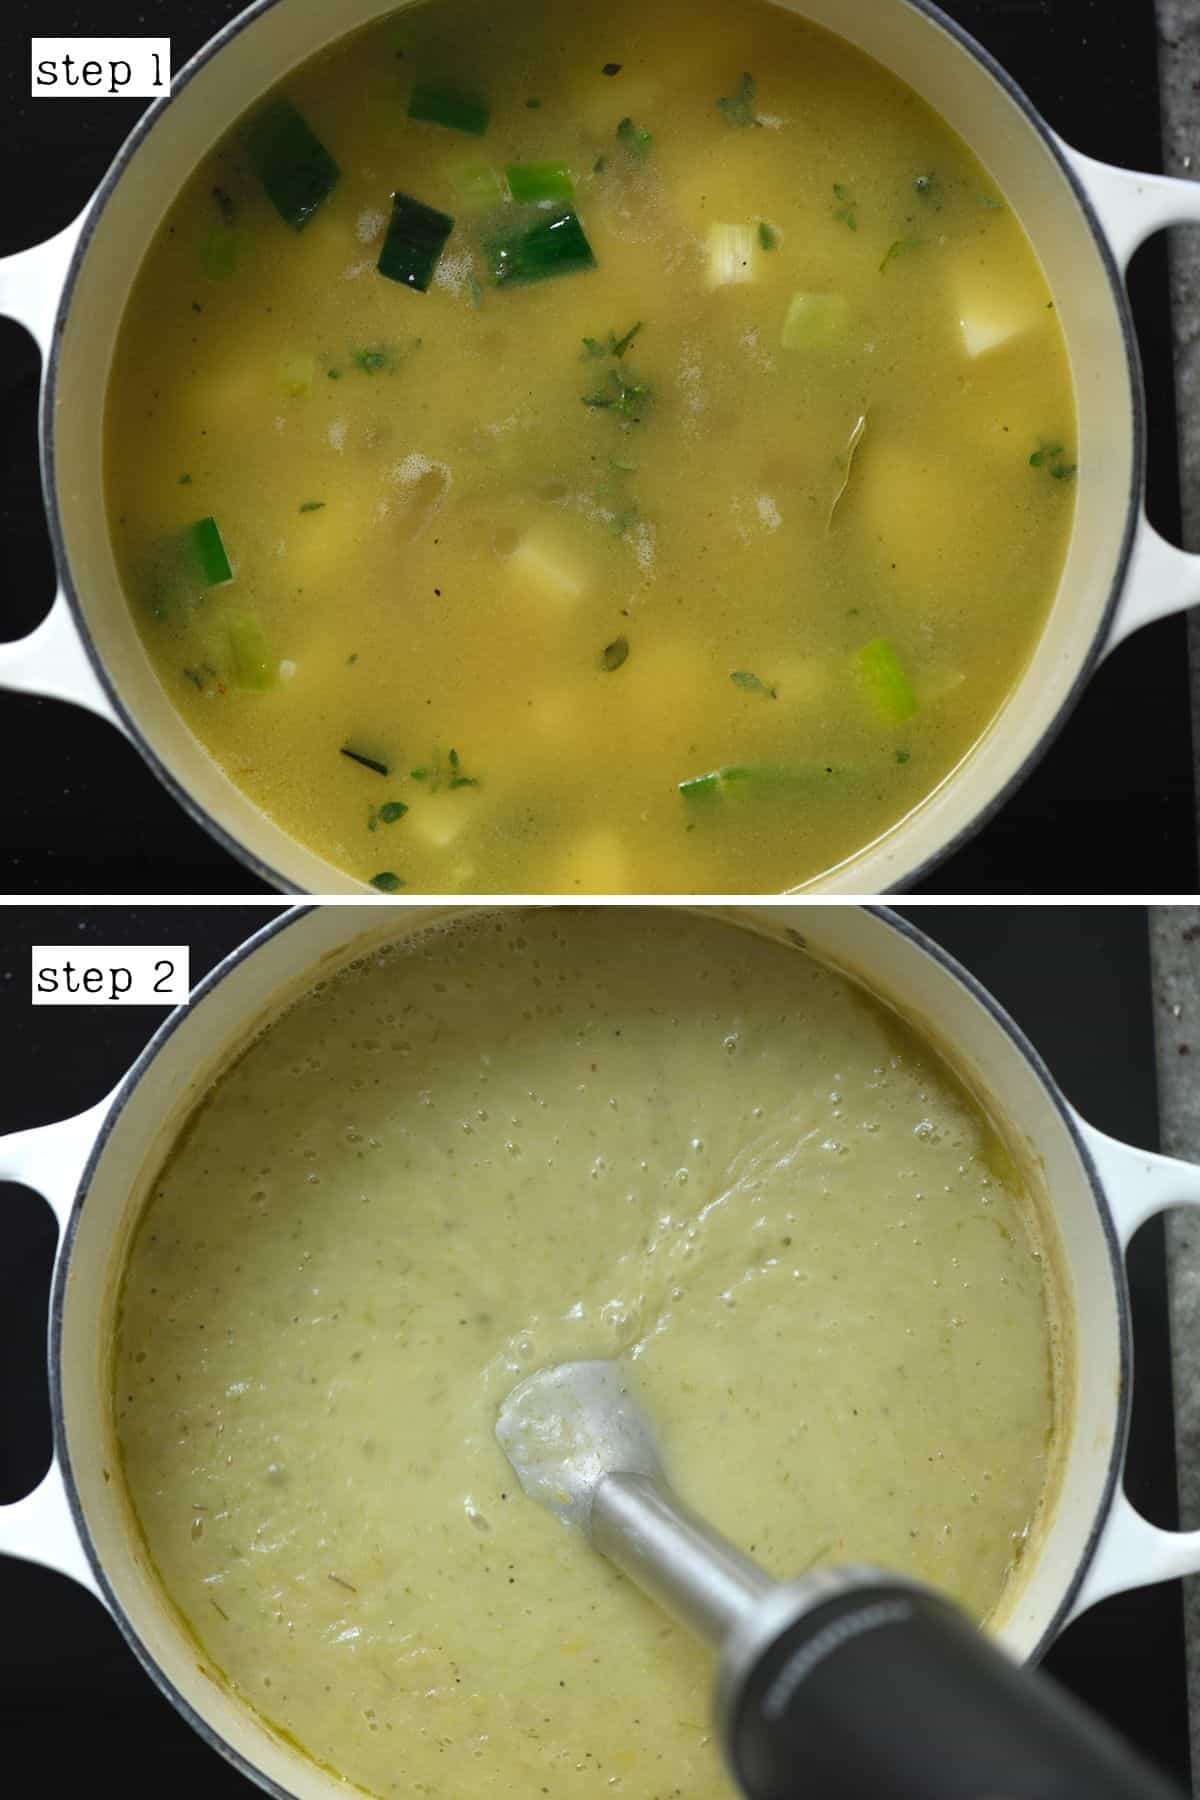 Blending potato leek soup in creamy soup